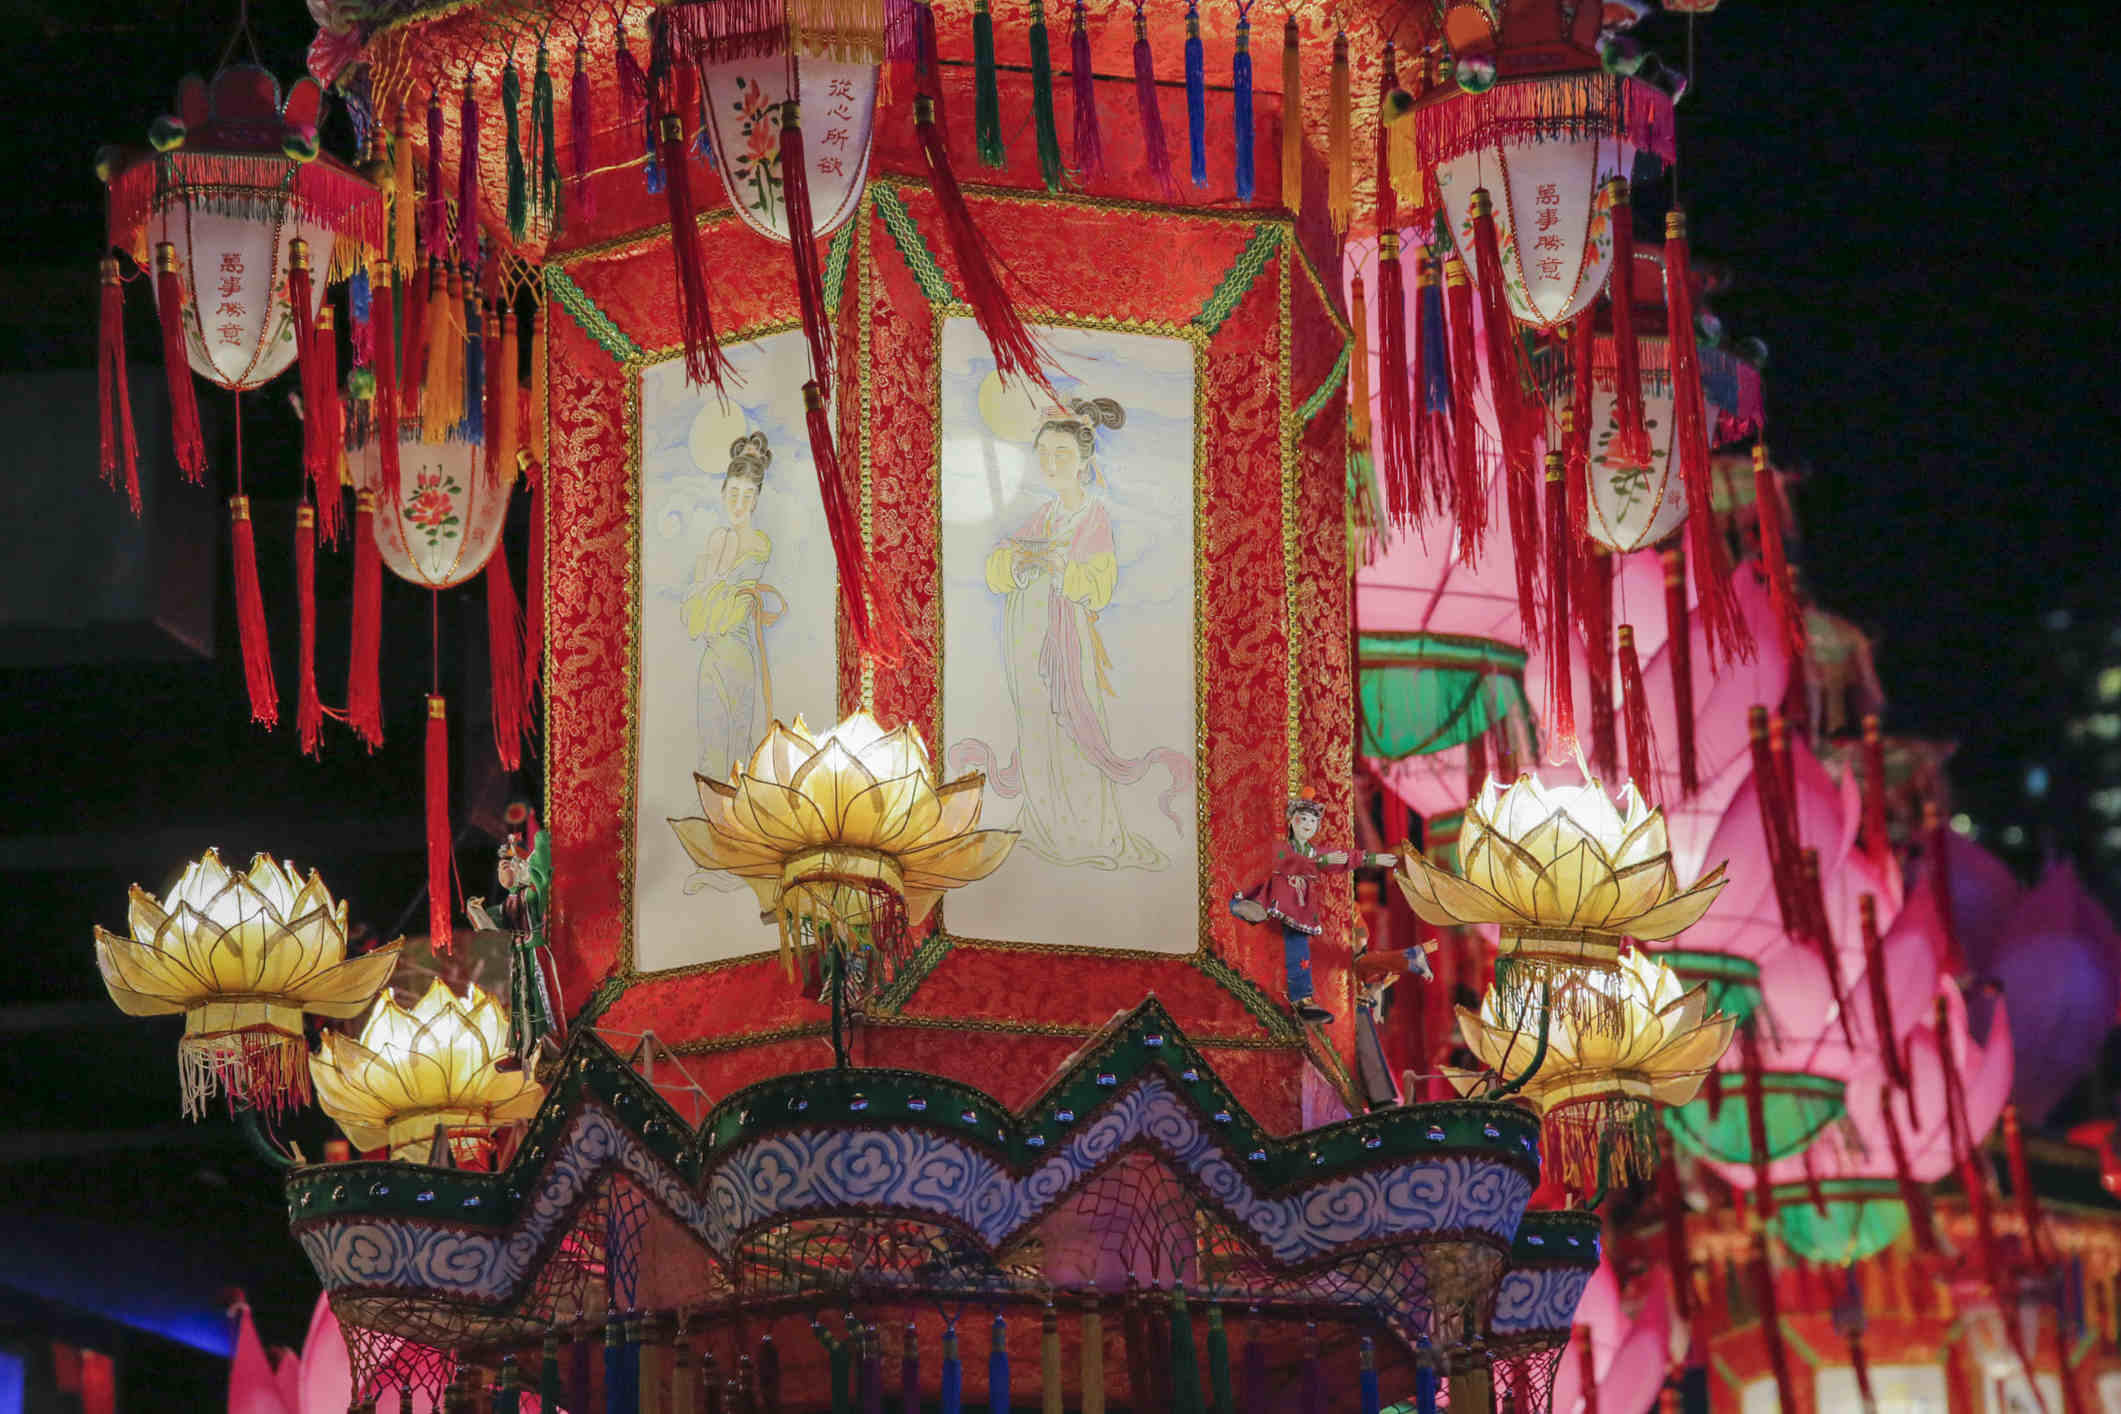 傳統花燈紮作工藝展示